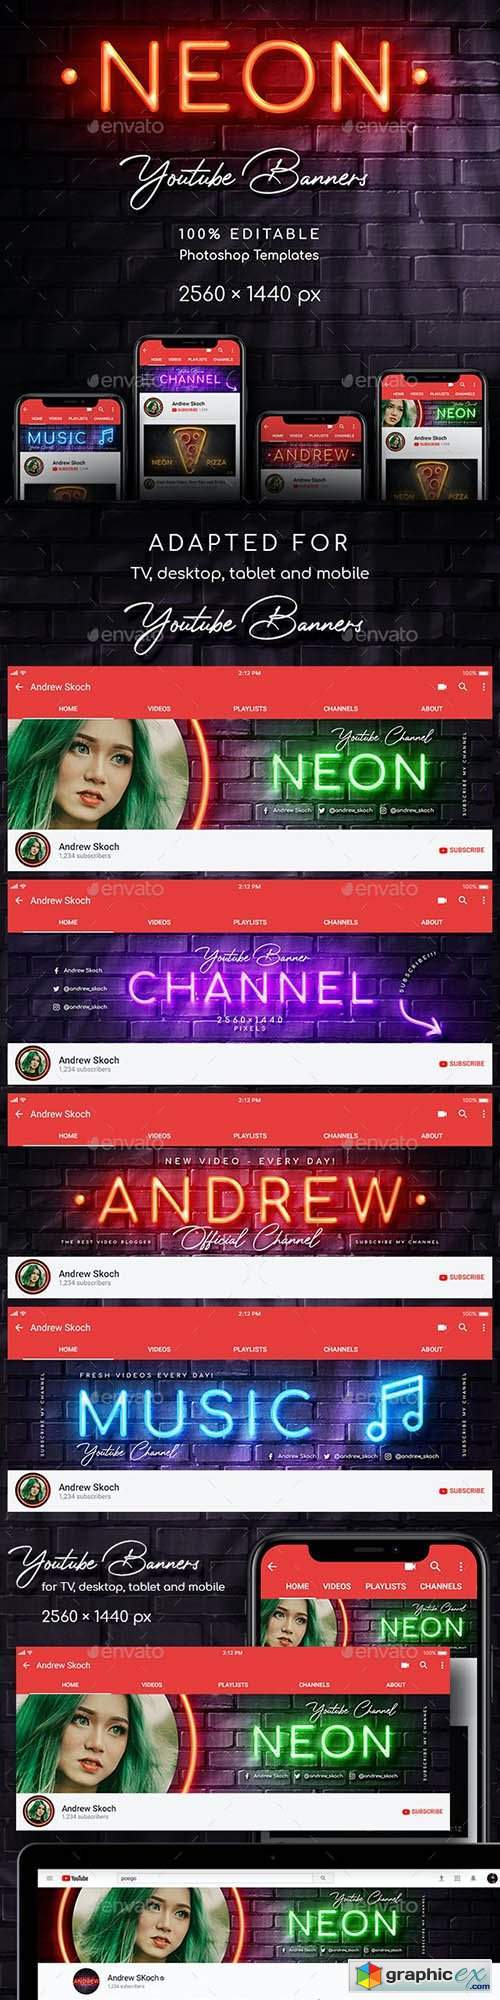 Neon YouTube Channel Art